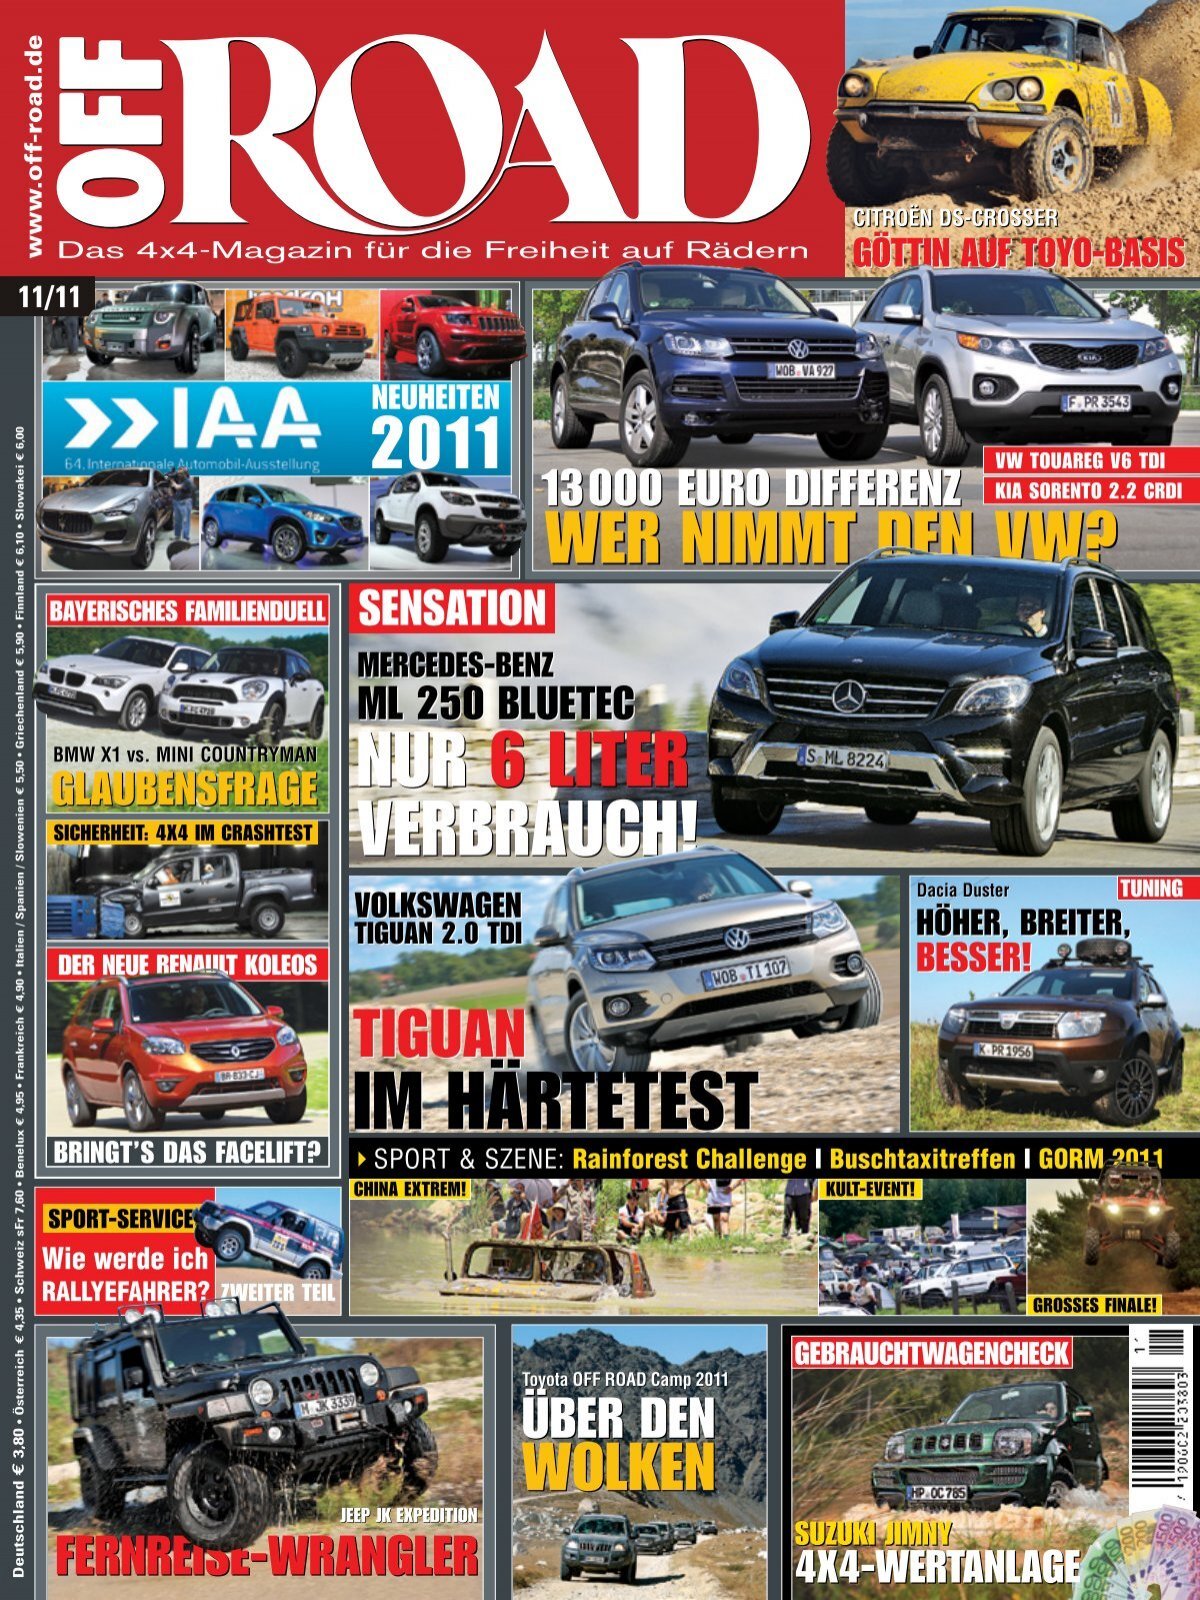 Leistungsstark und umfangreich ausgestattet: Der neue Skoda Octavia RS Plus  -  Magazin